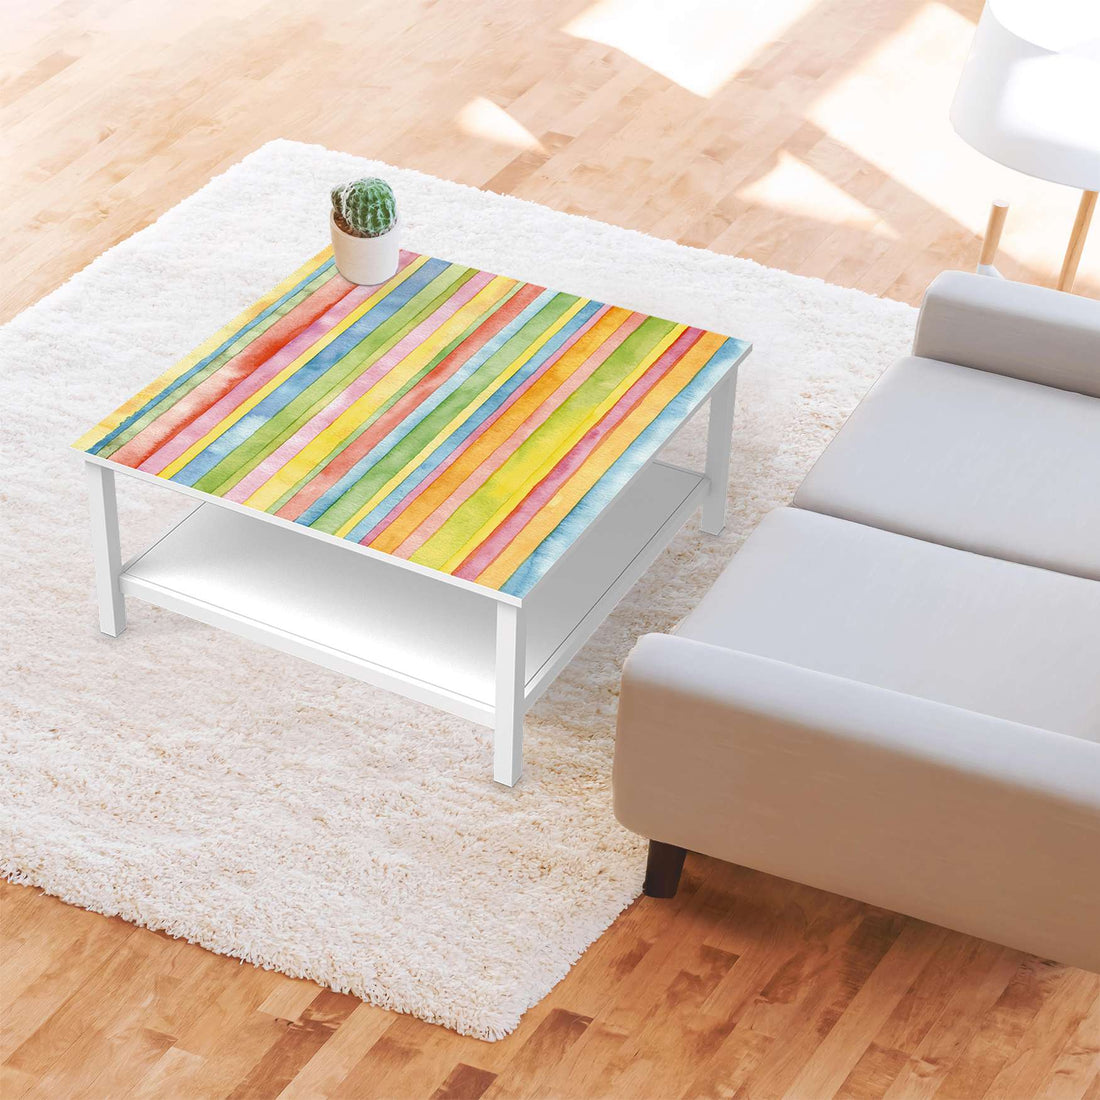 Klebefolie für Möbel Watercolor Stripes - IKEA Hemnes Couchtisch 90x90 cm - Wohnzimmer